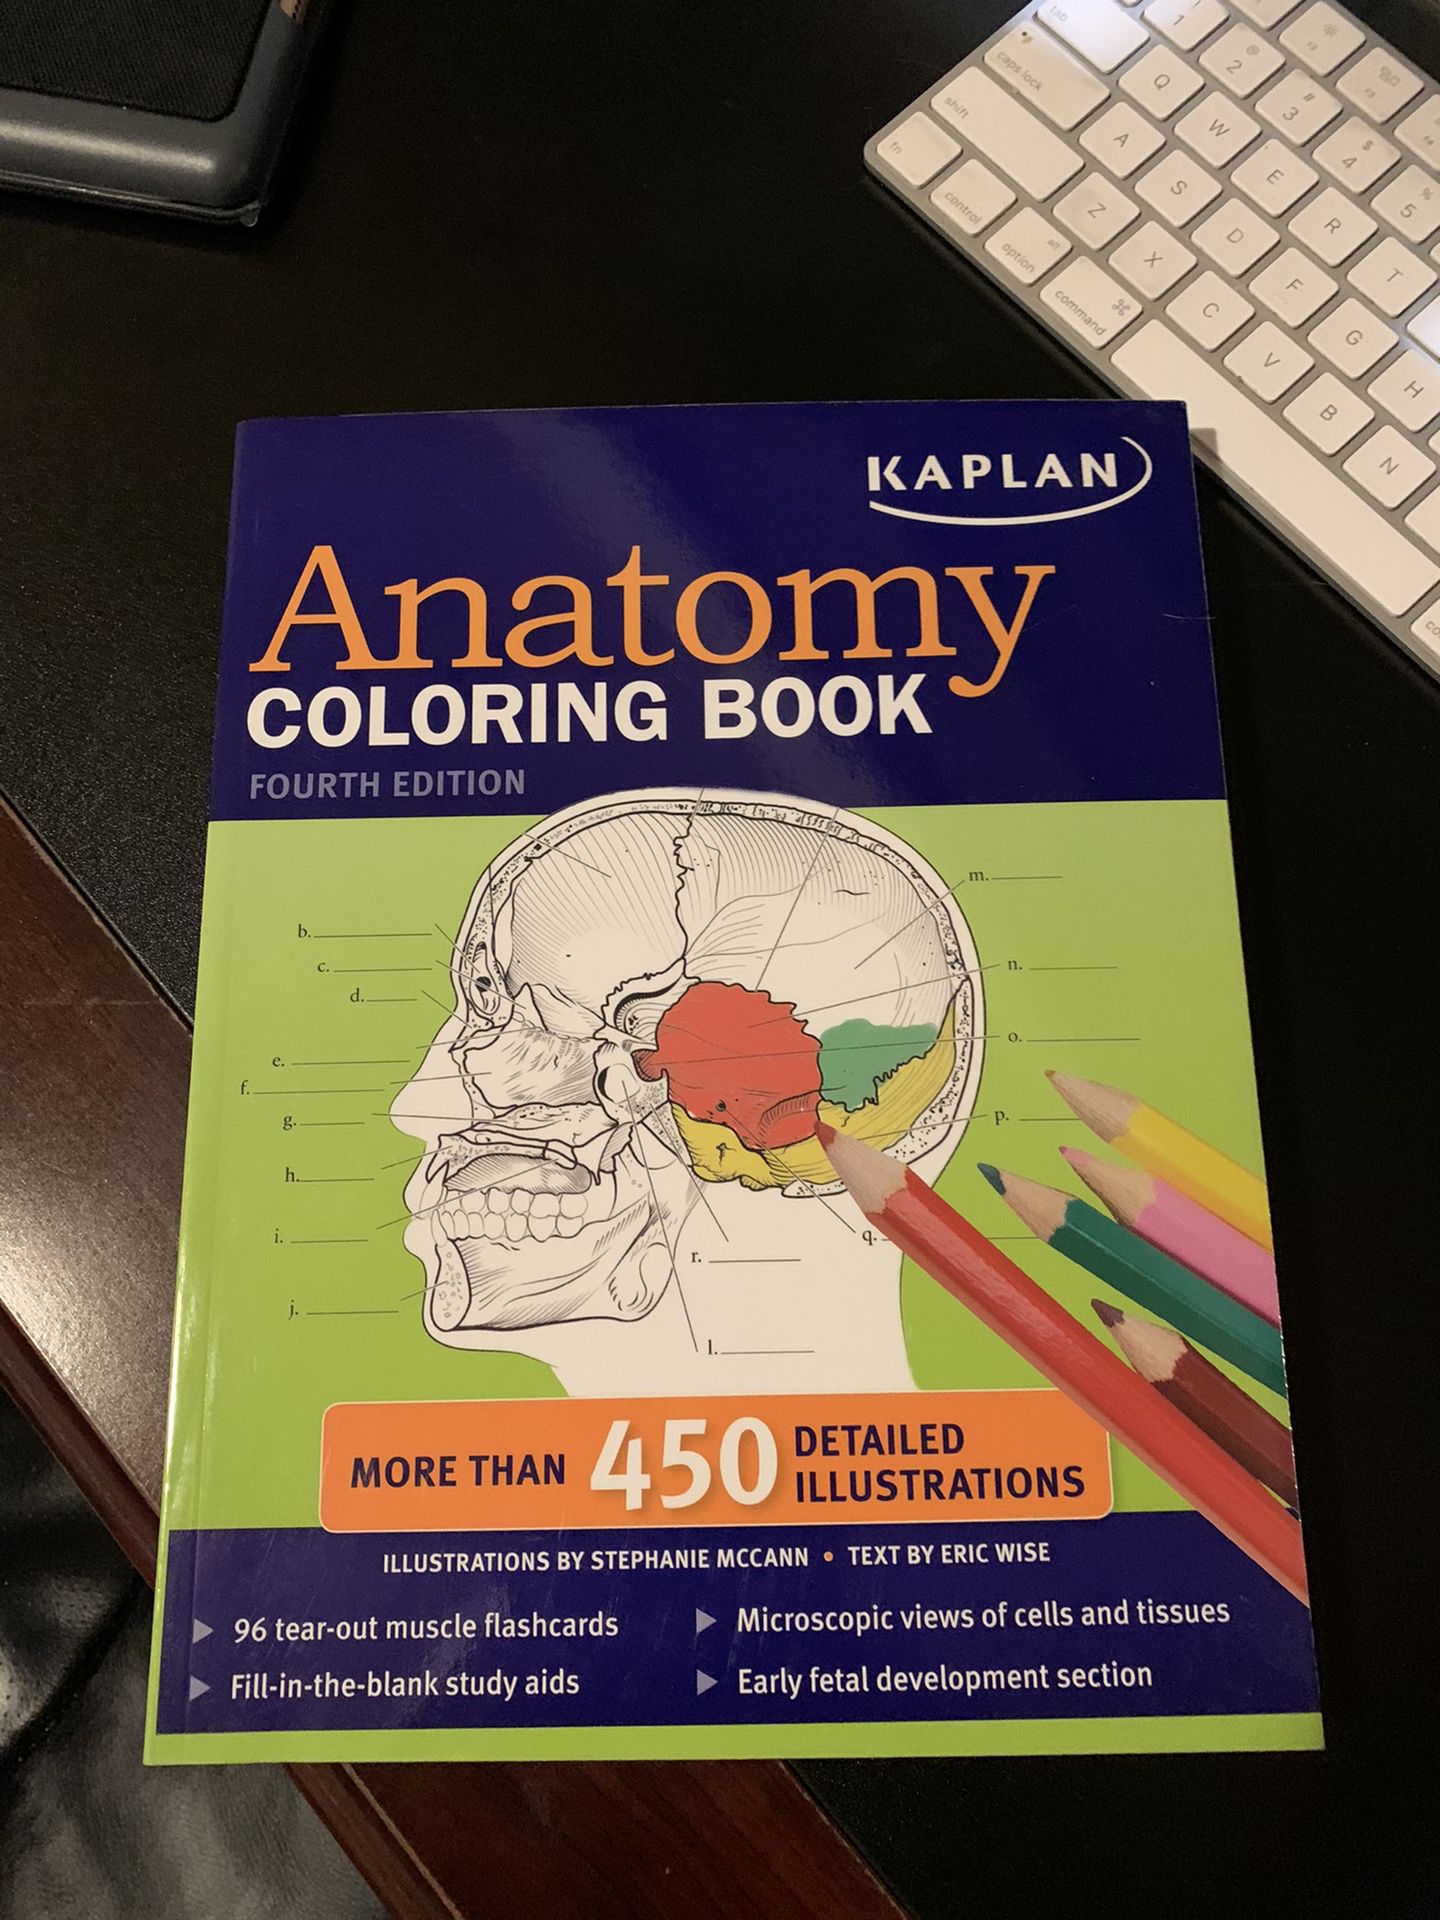 Kaplan Anatomy Coloring Book